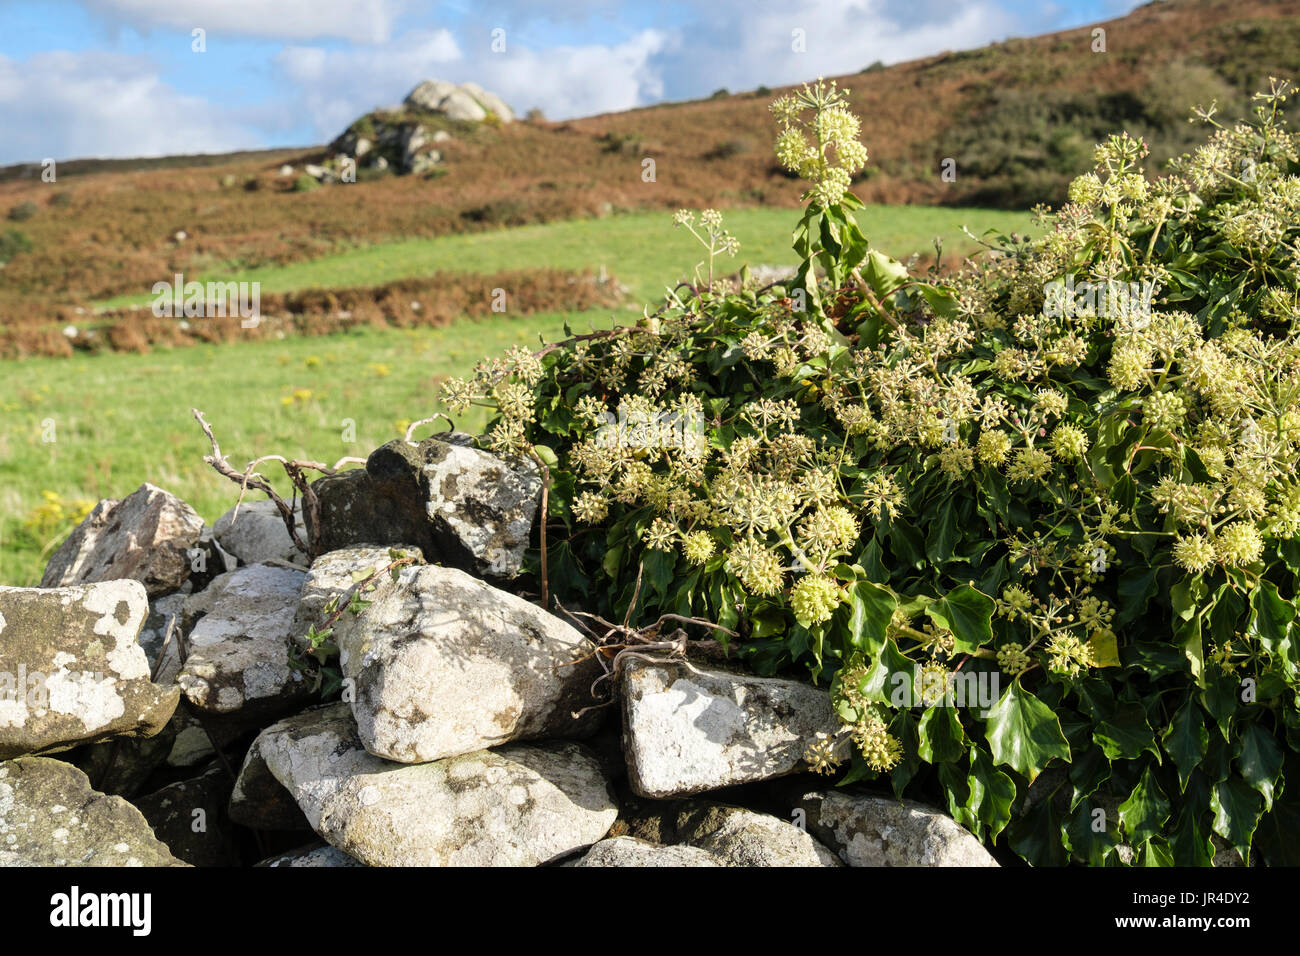 La floraison le lierre (Hedera helix) poussant sur un mur en pierre sèche dans la campagne en automne. Pays de Galles, Royaume-Uni, Angleterre Banque D'Images